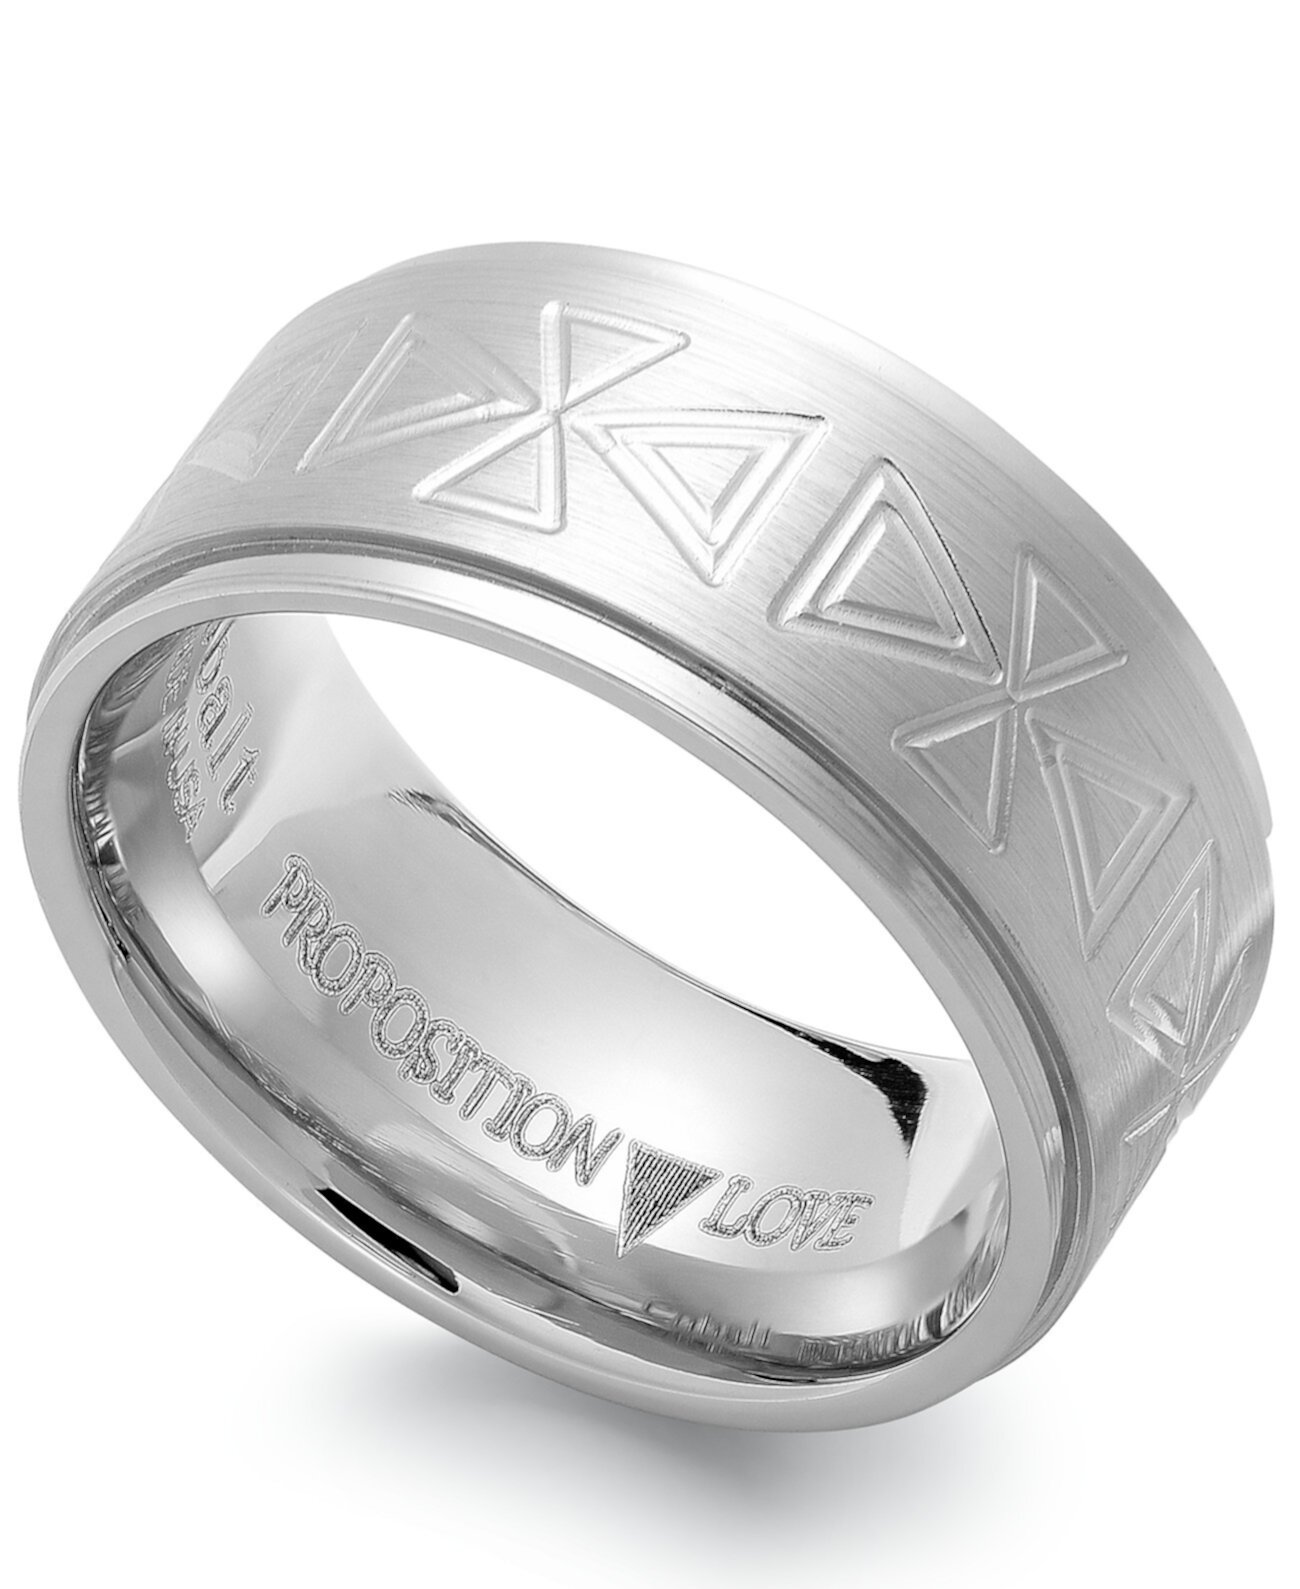 Обручальное кольцо с кобальтовым треугольником Proposition Love